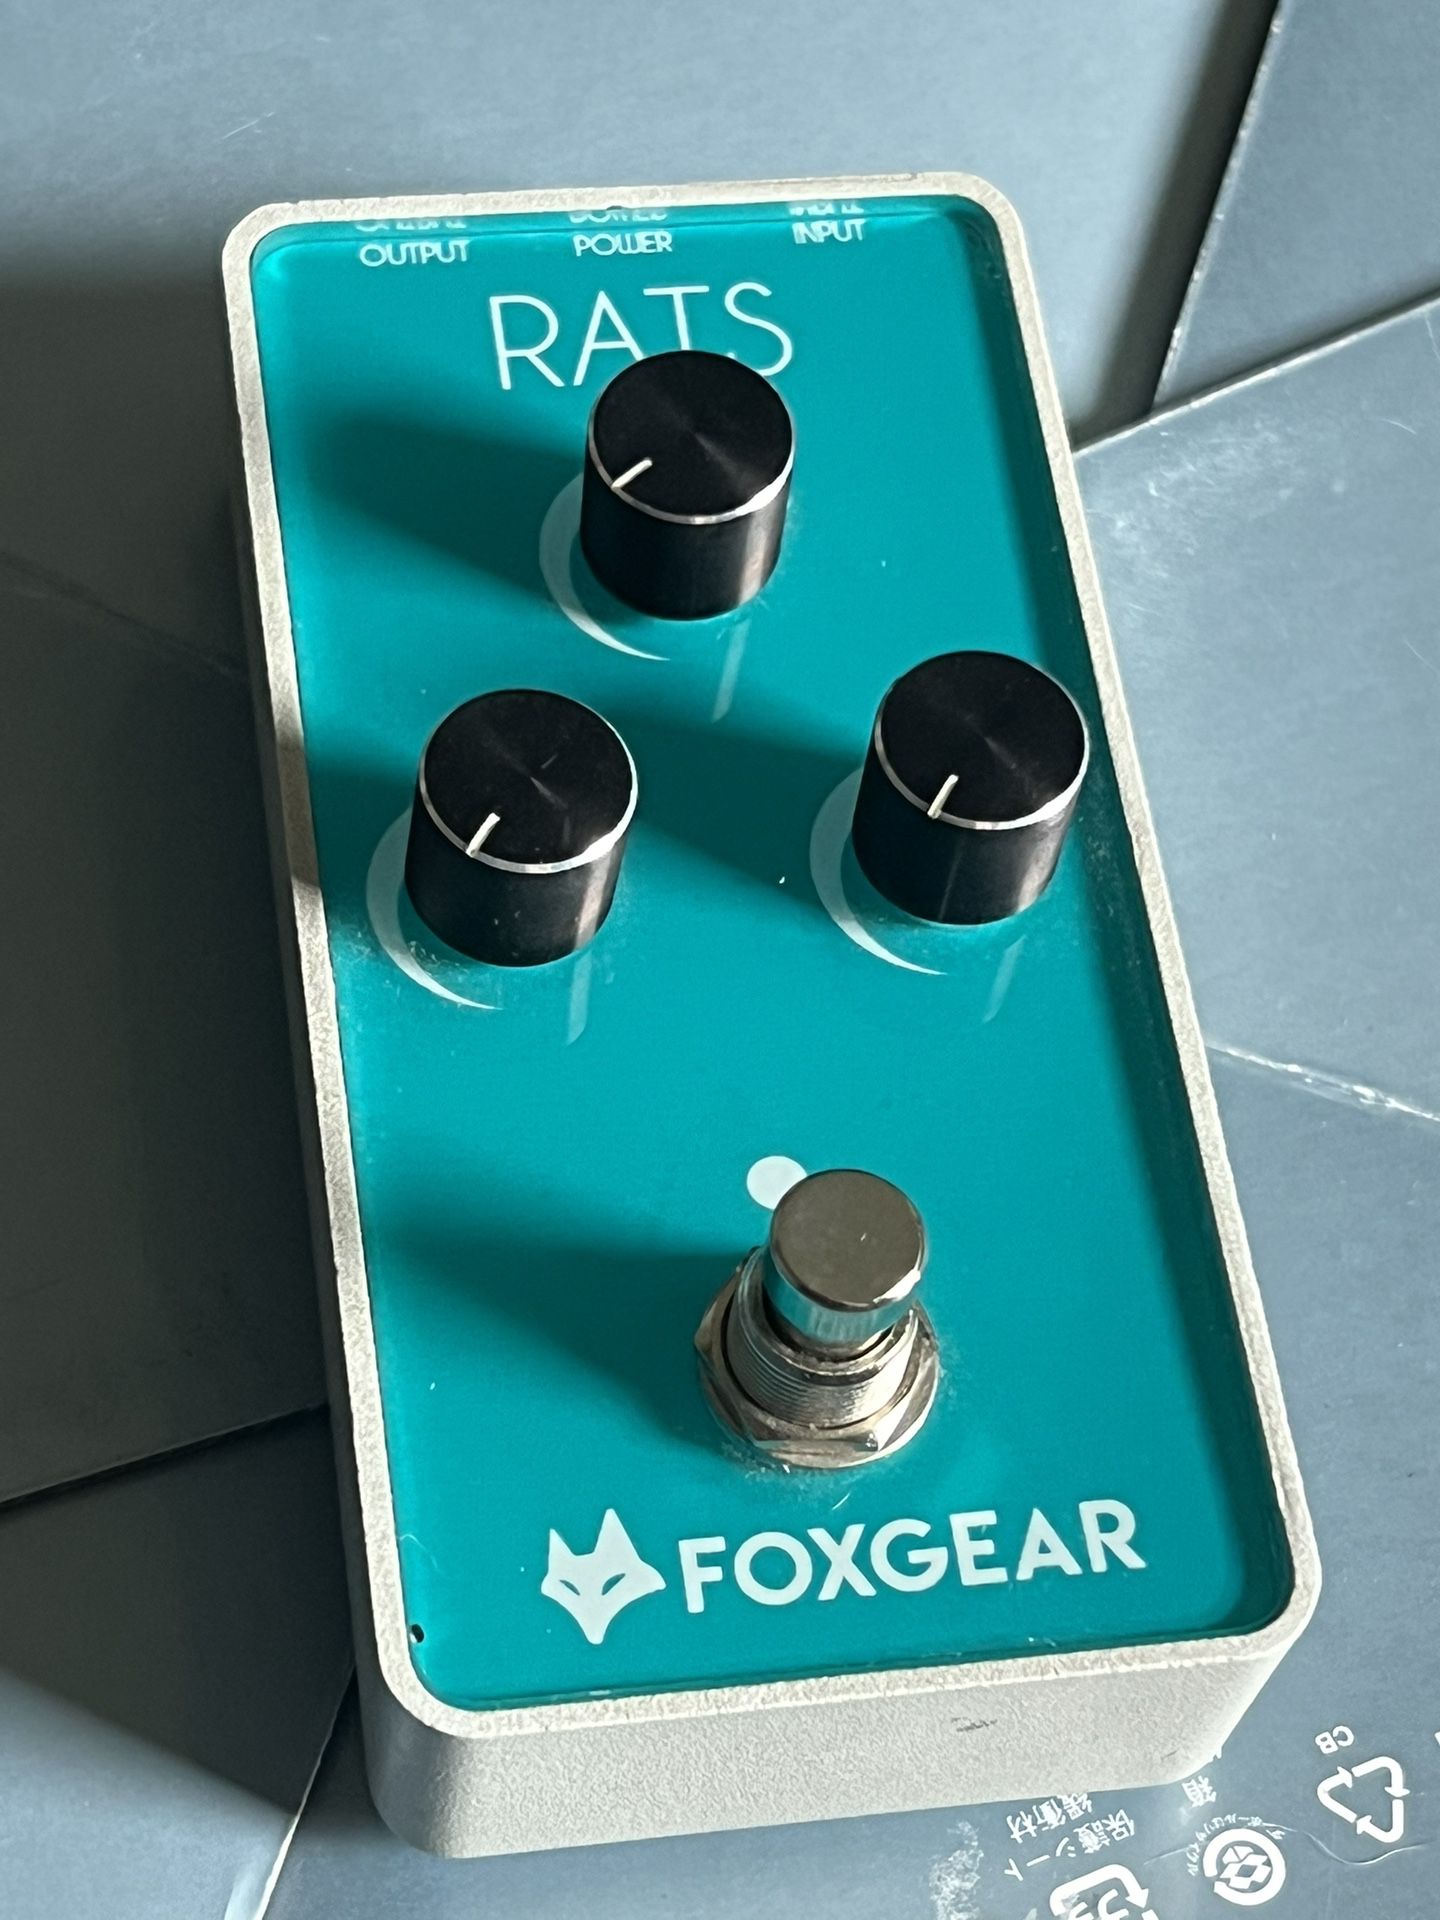 FoxGear Rats Guitar Pedal